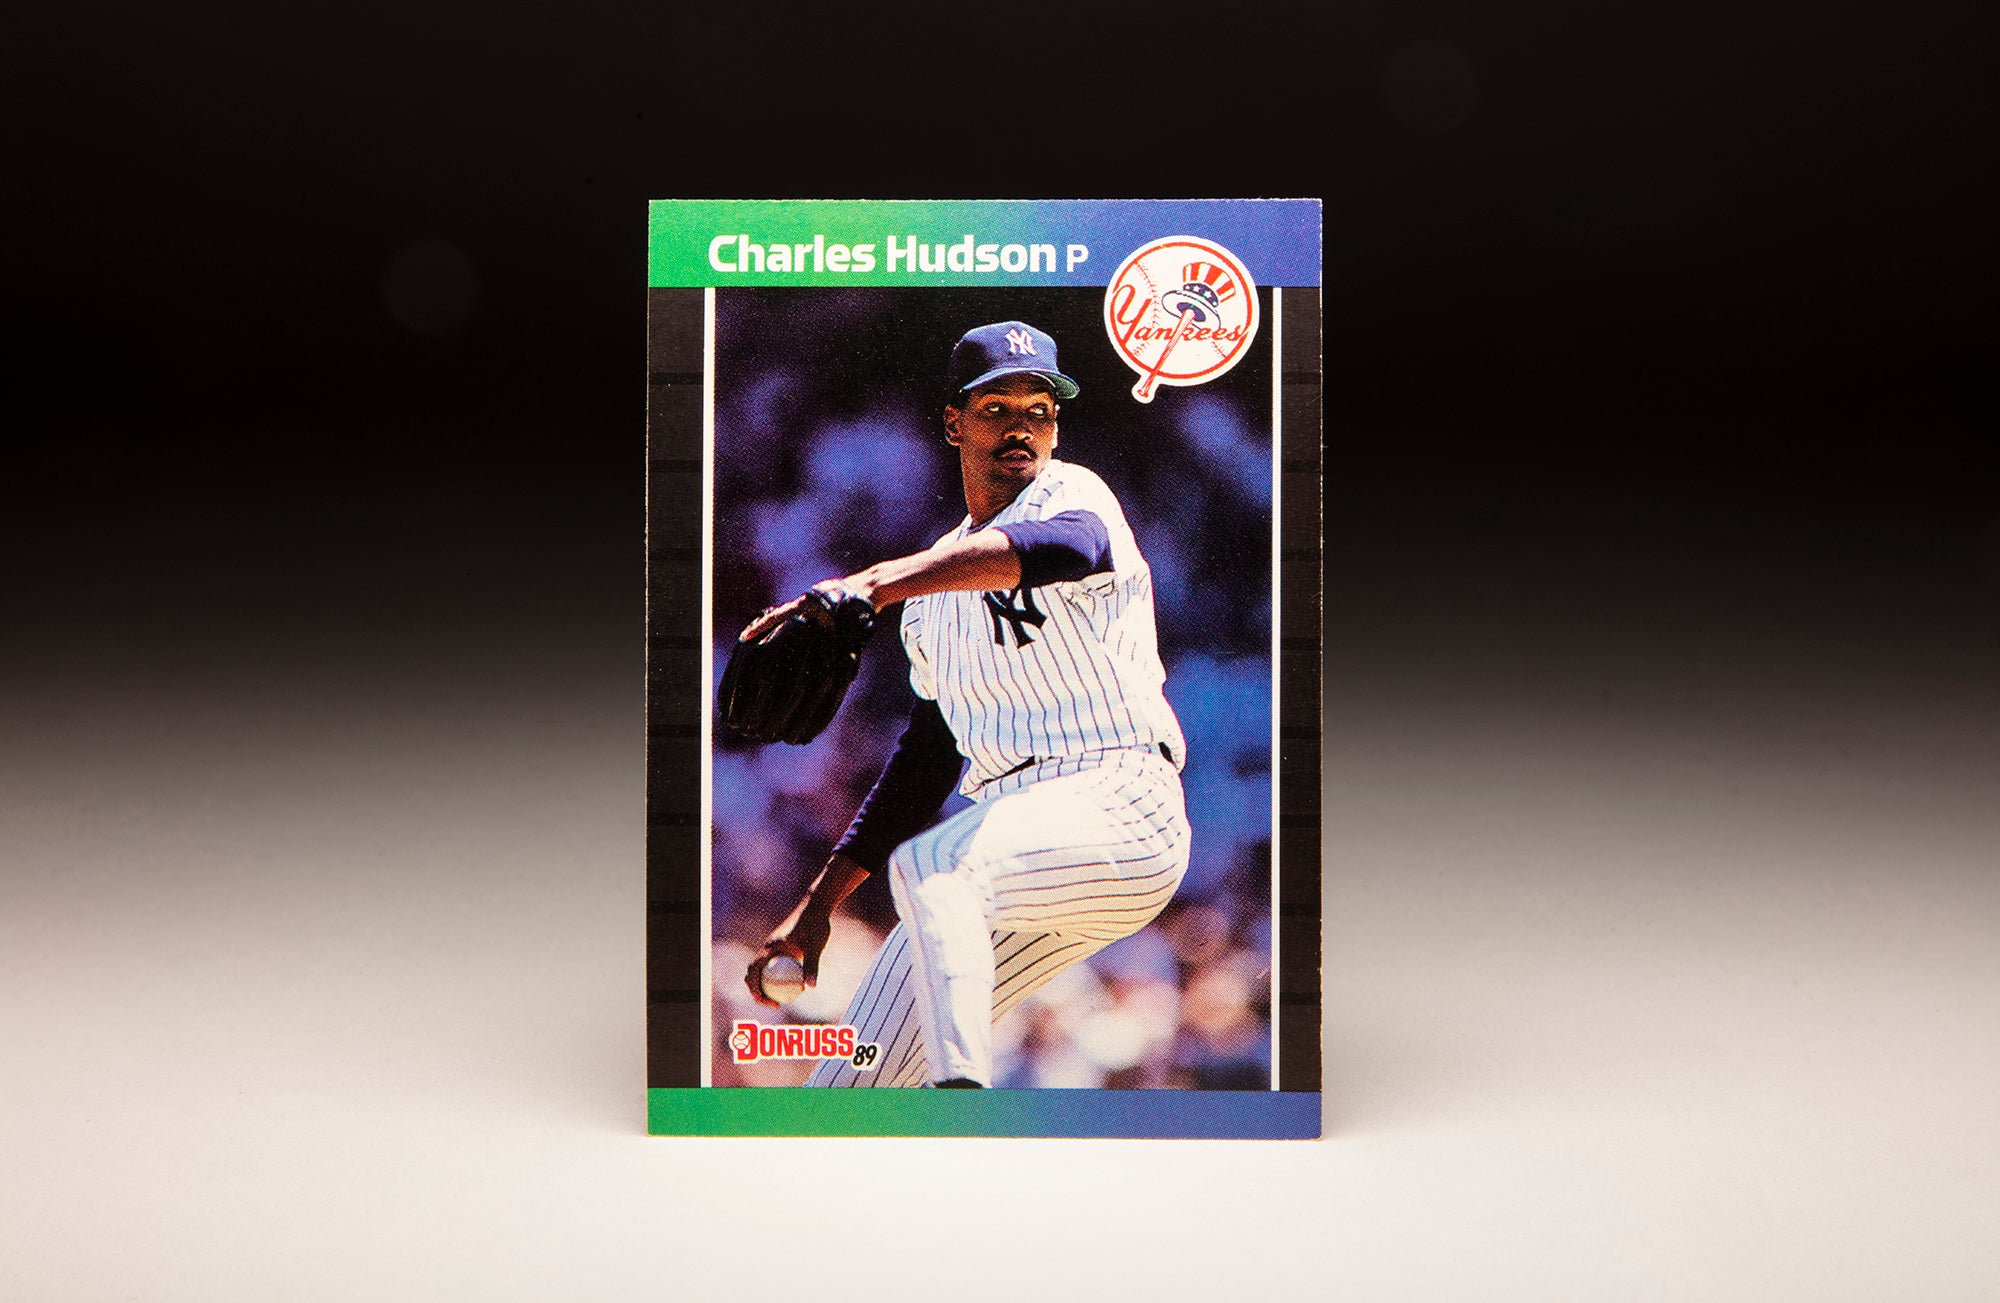 #CardCorner: 1989 Donruss Charles Hudson